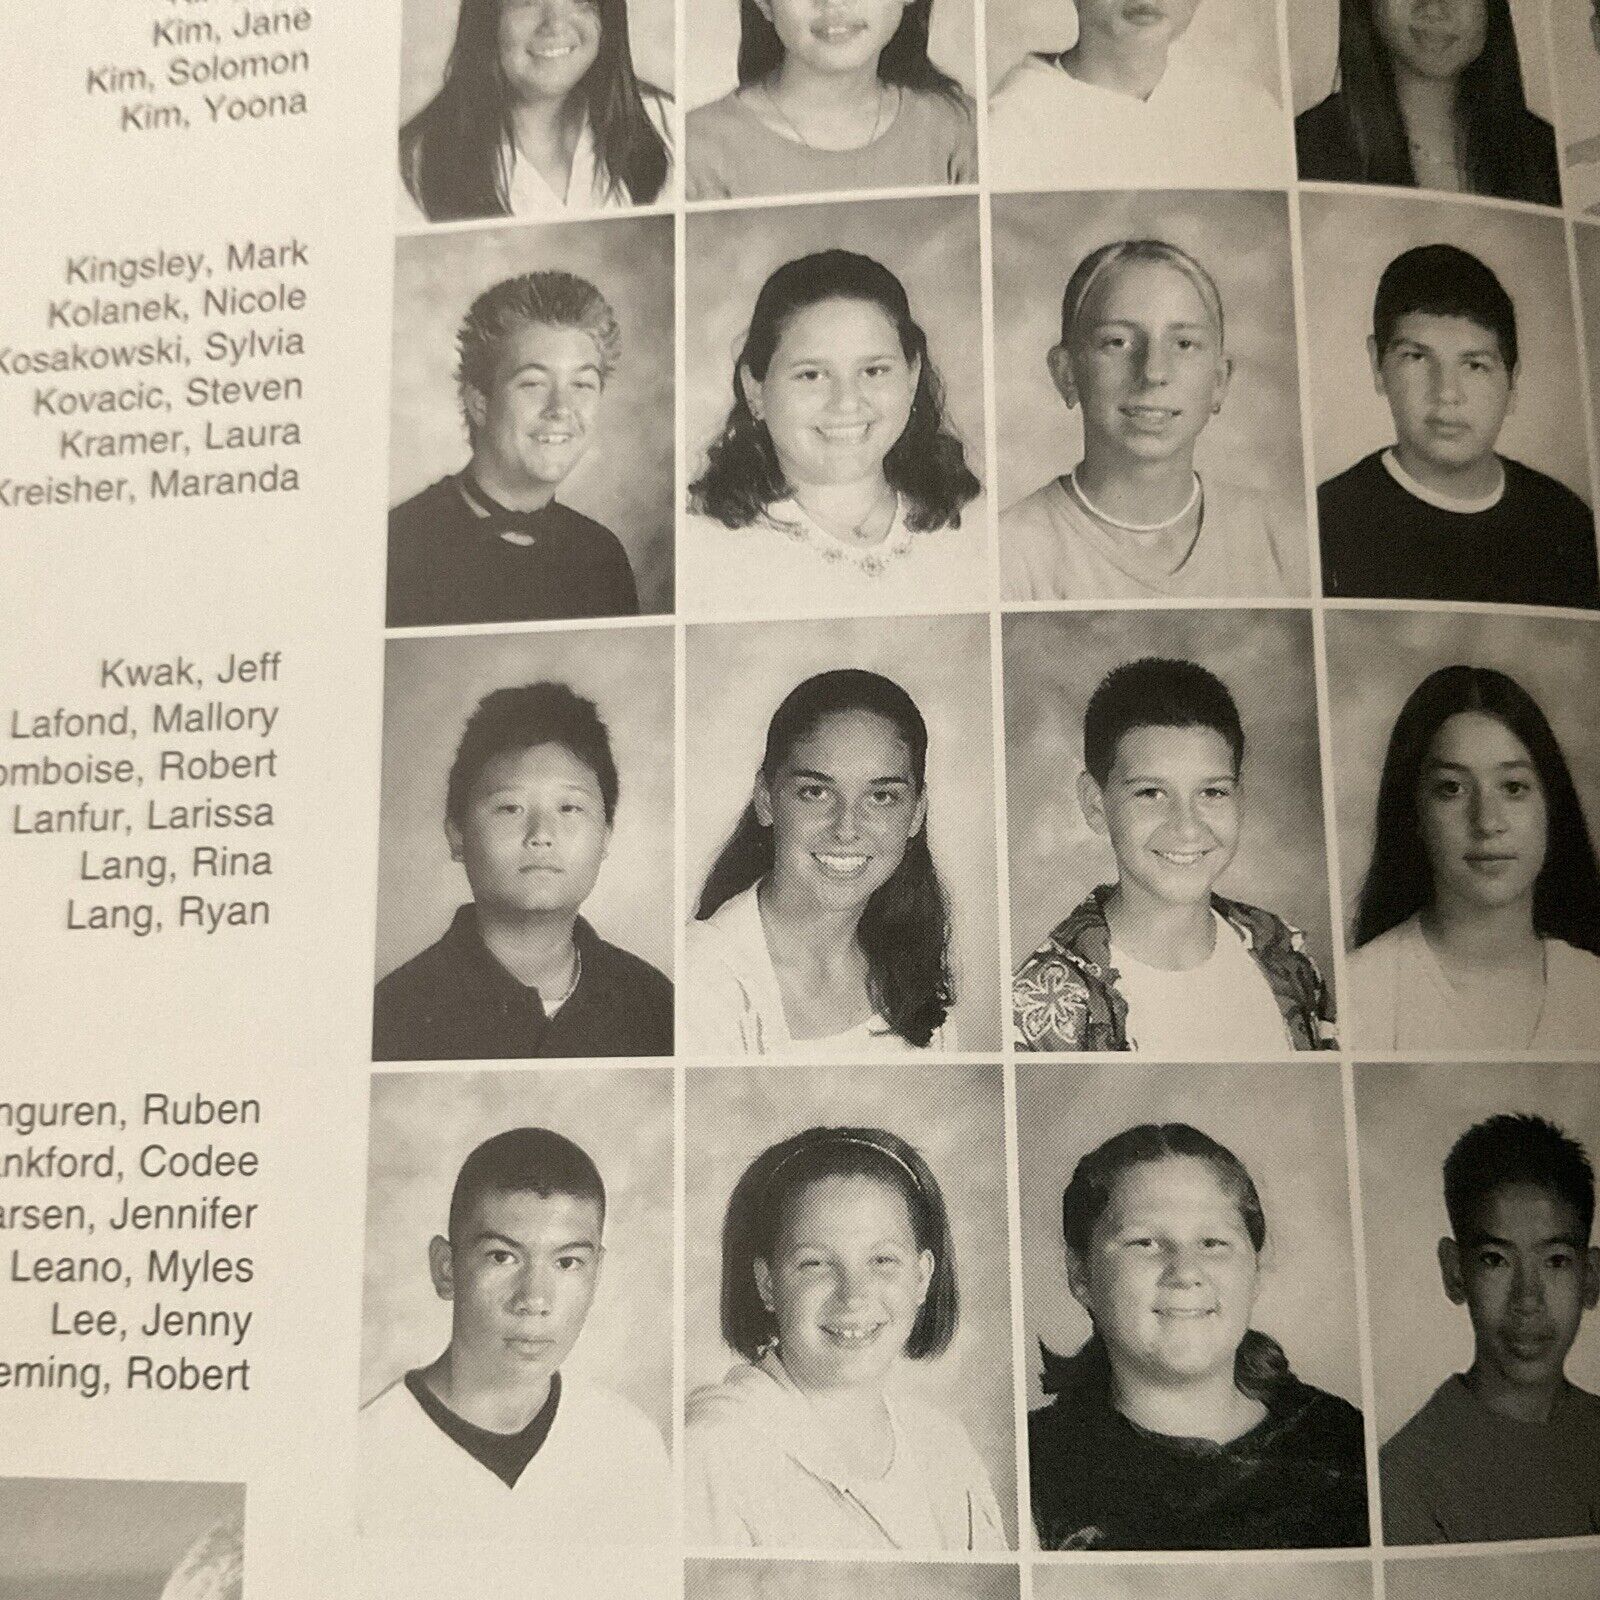 2001 MLB Robert LaFromboise Warren High School Yearbook. Downey, Ca.